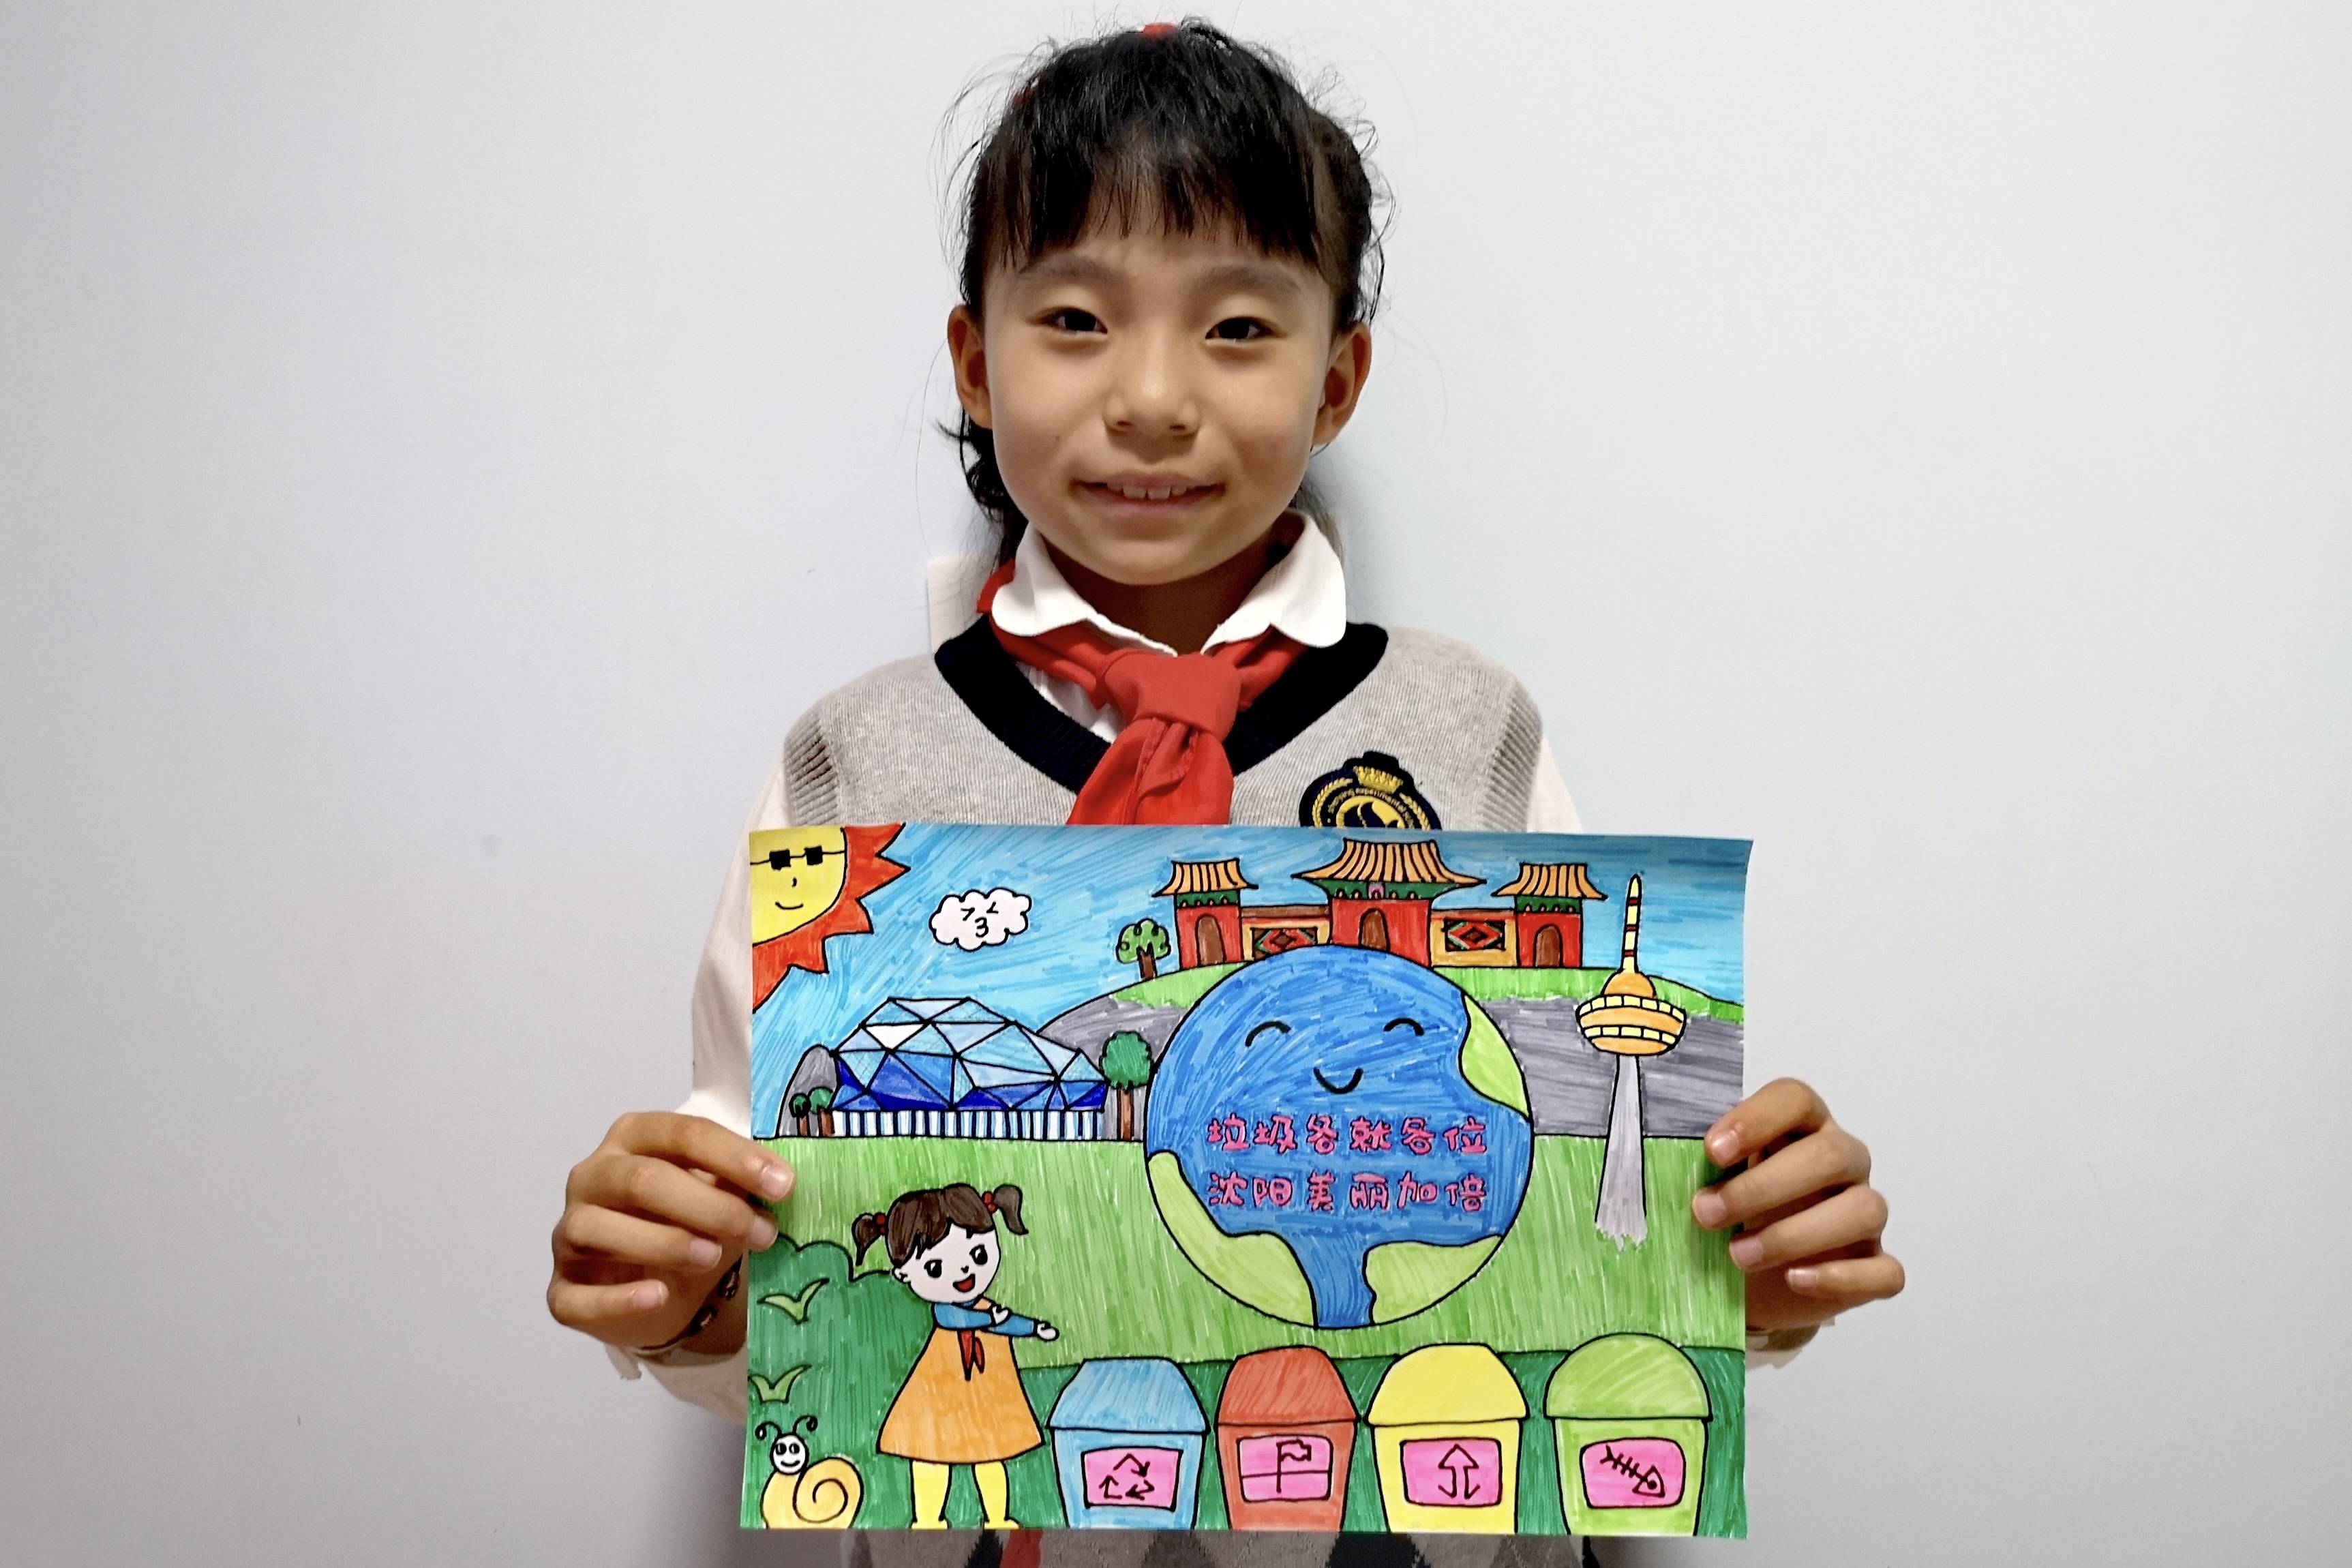 沈阳小学生垃圾分类绘画作品展示2447幅